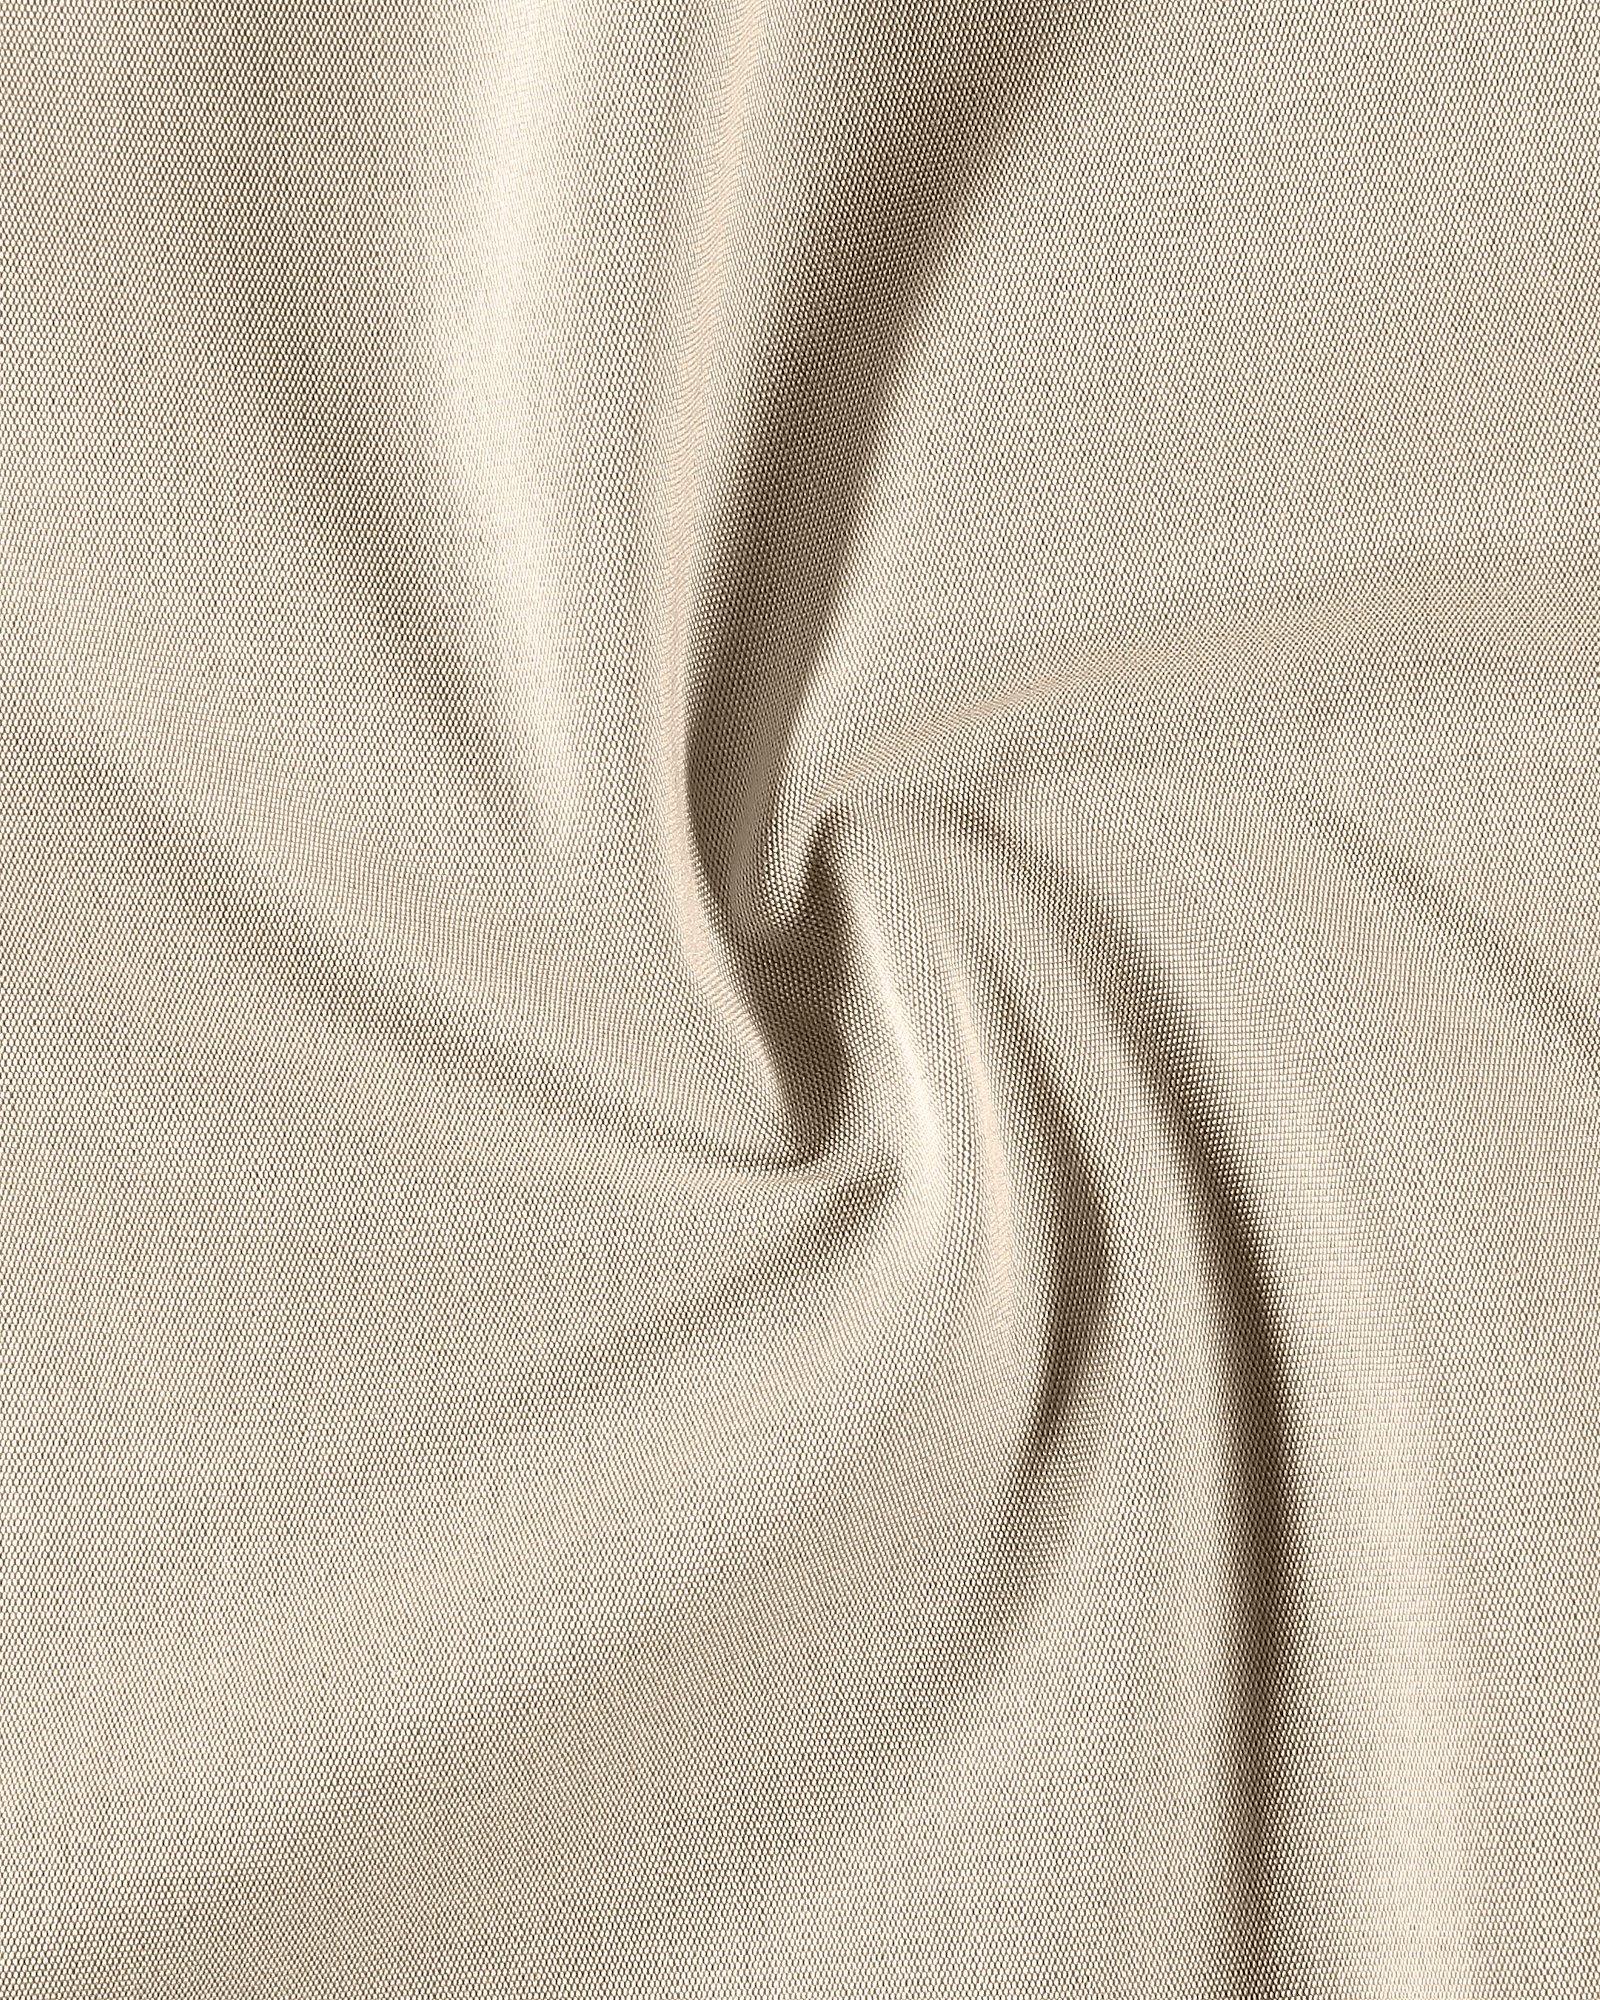 ALBEROSUN® outdoor fabric linen 826246_pack